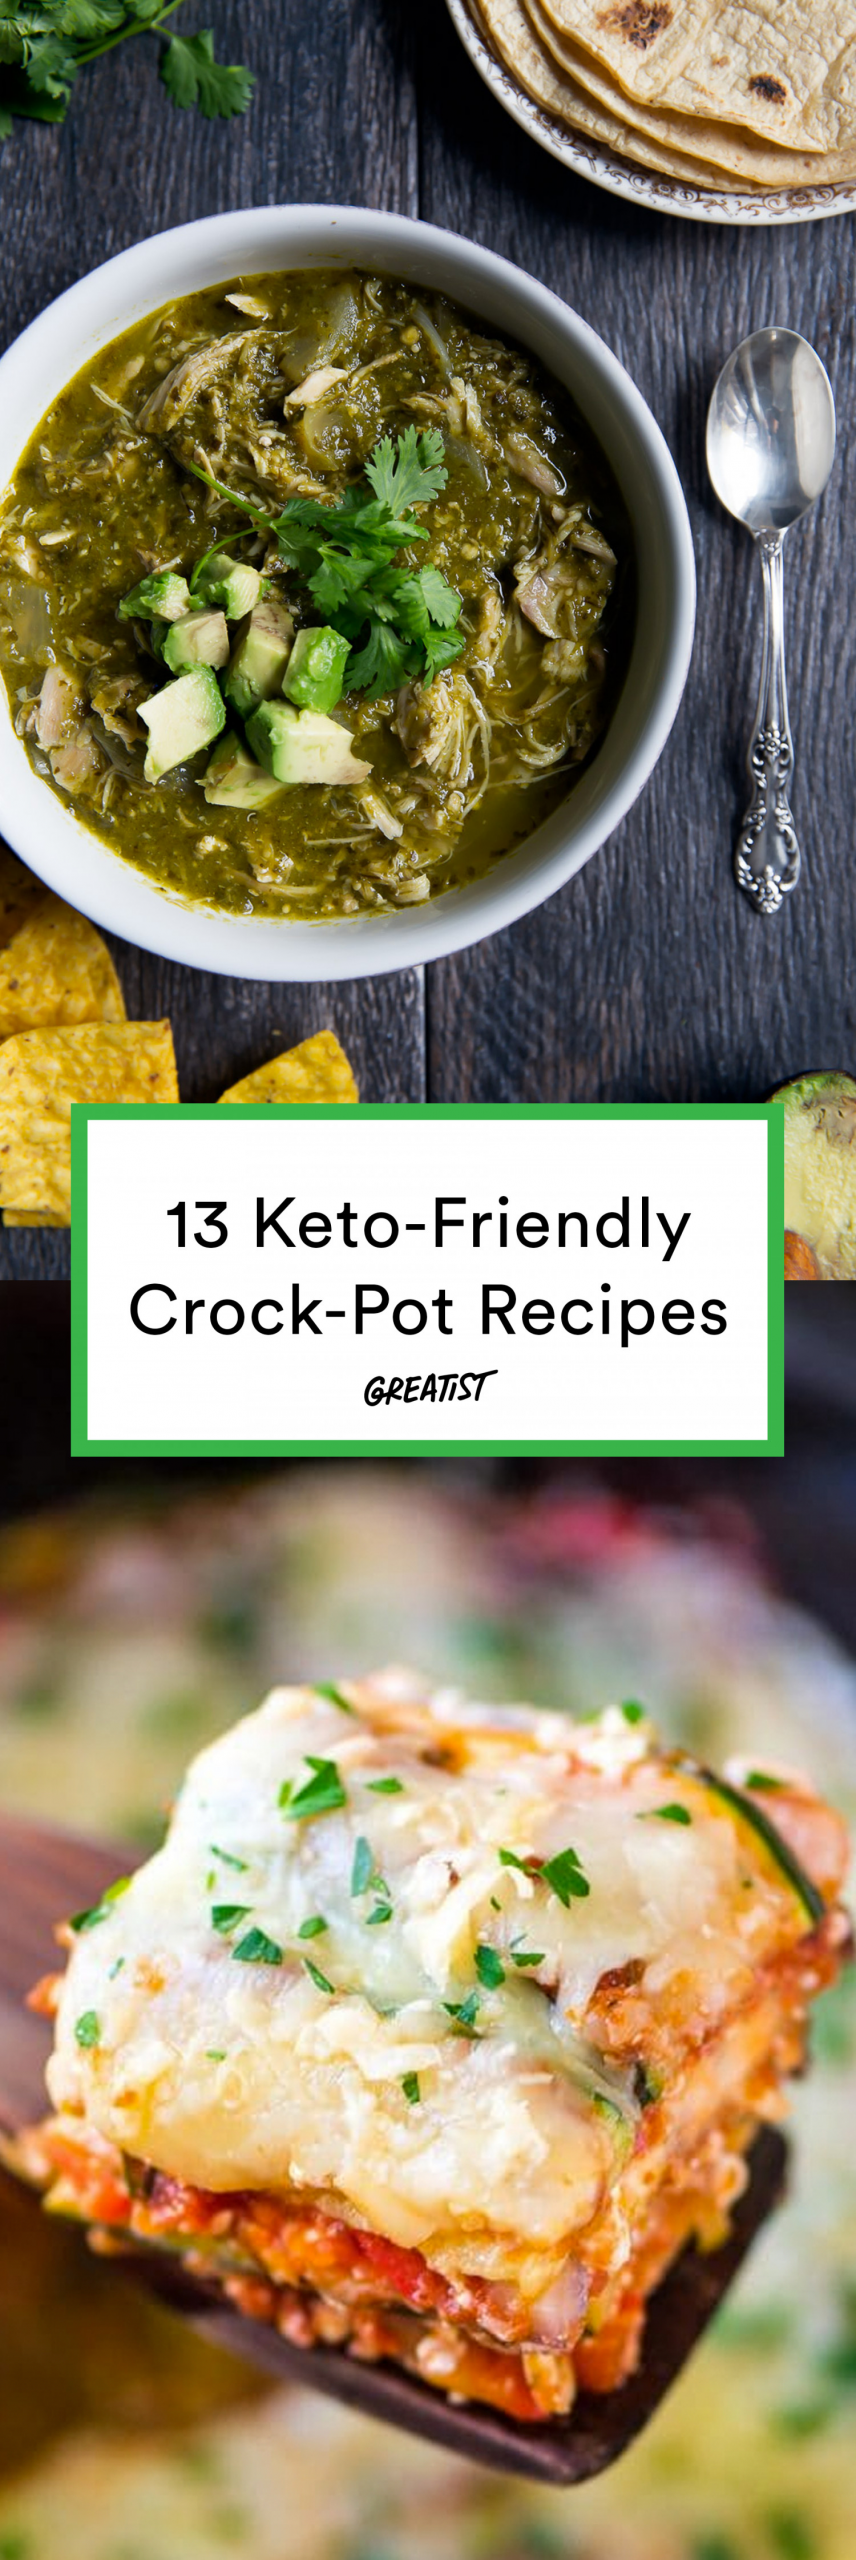 Low Carb Meals Crock Pot Keto
 13 Keto Crock Pot Recipes for Easy Low Carb Meals